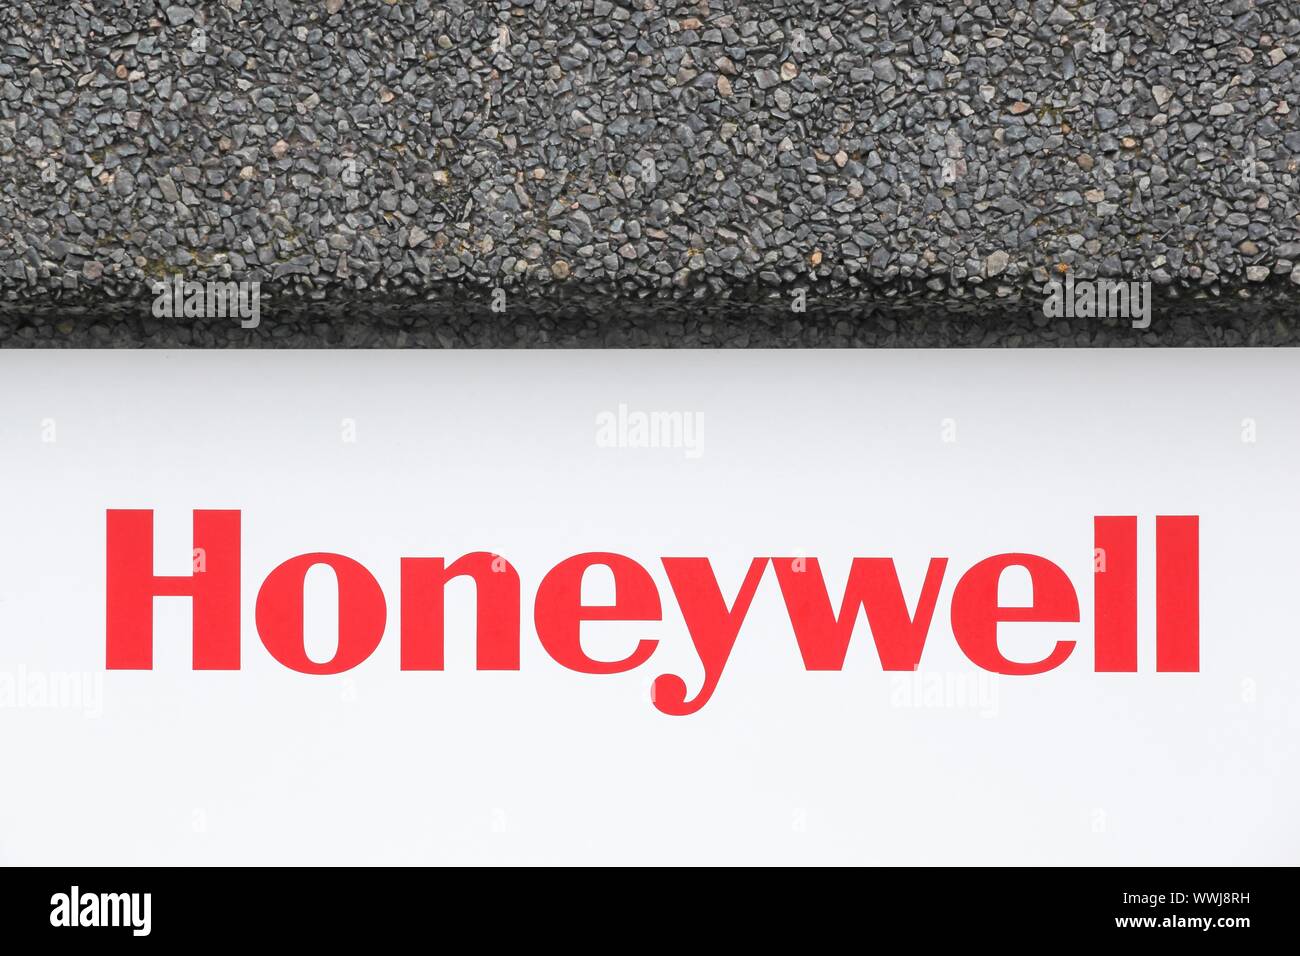 Lozanne, France - 9 août 2019 : Honeywell logo sur un mur. Honeywell est un conglomérat multinational company Banque D'Images